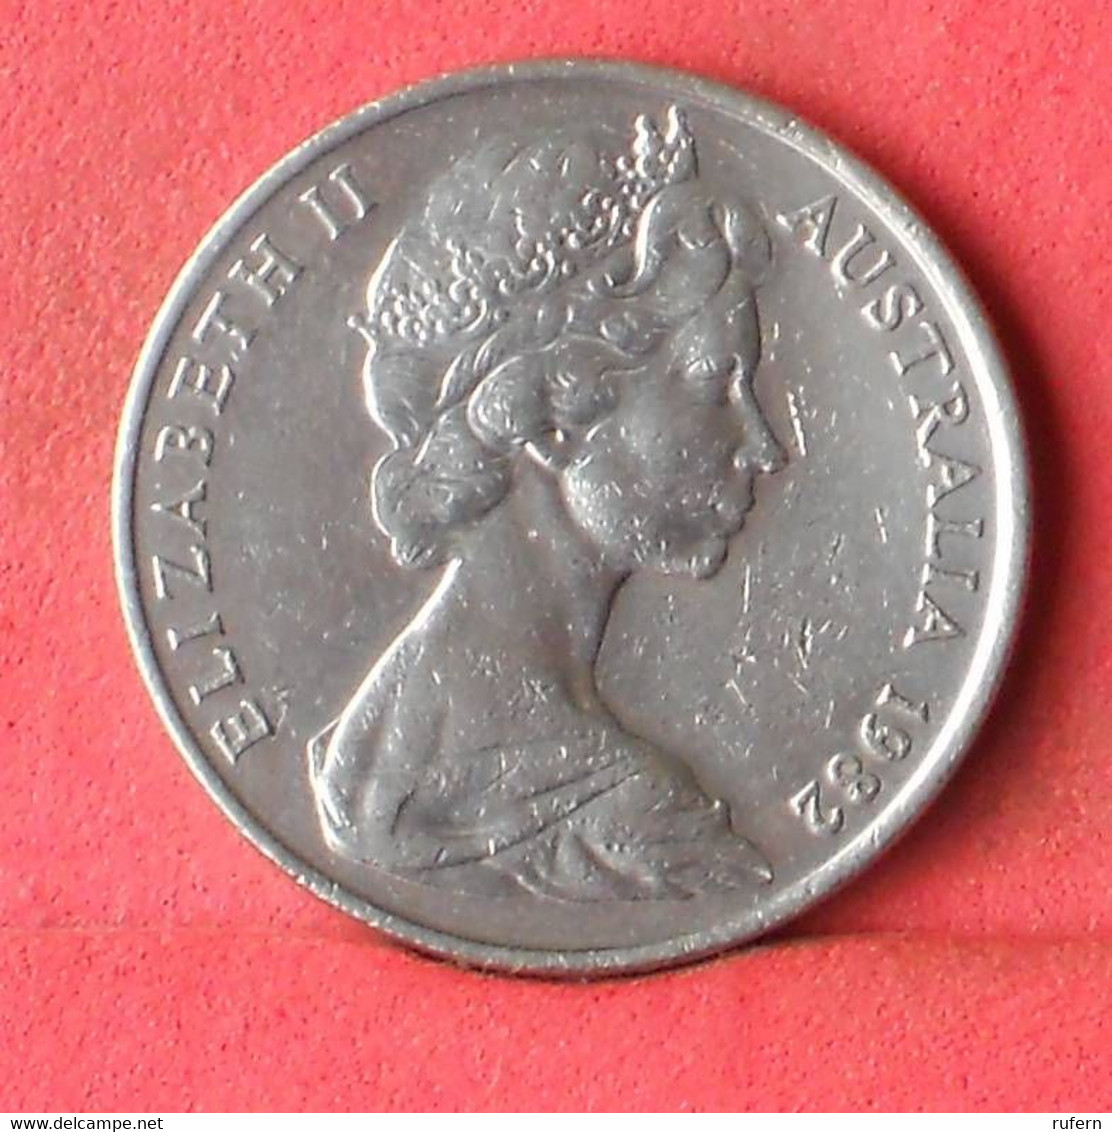 AUSTRALIA 20 CENTS 1982 -    KM# 66 - (Nº39175) - 20 Cents